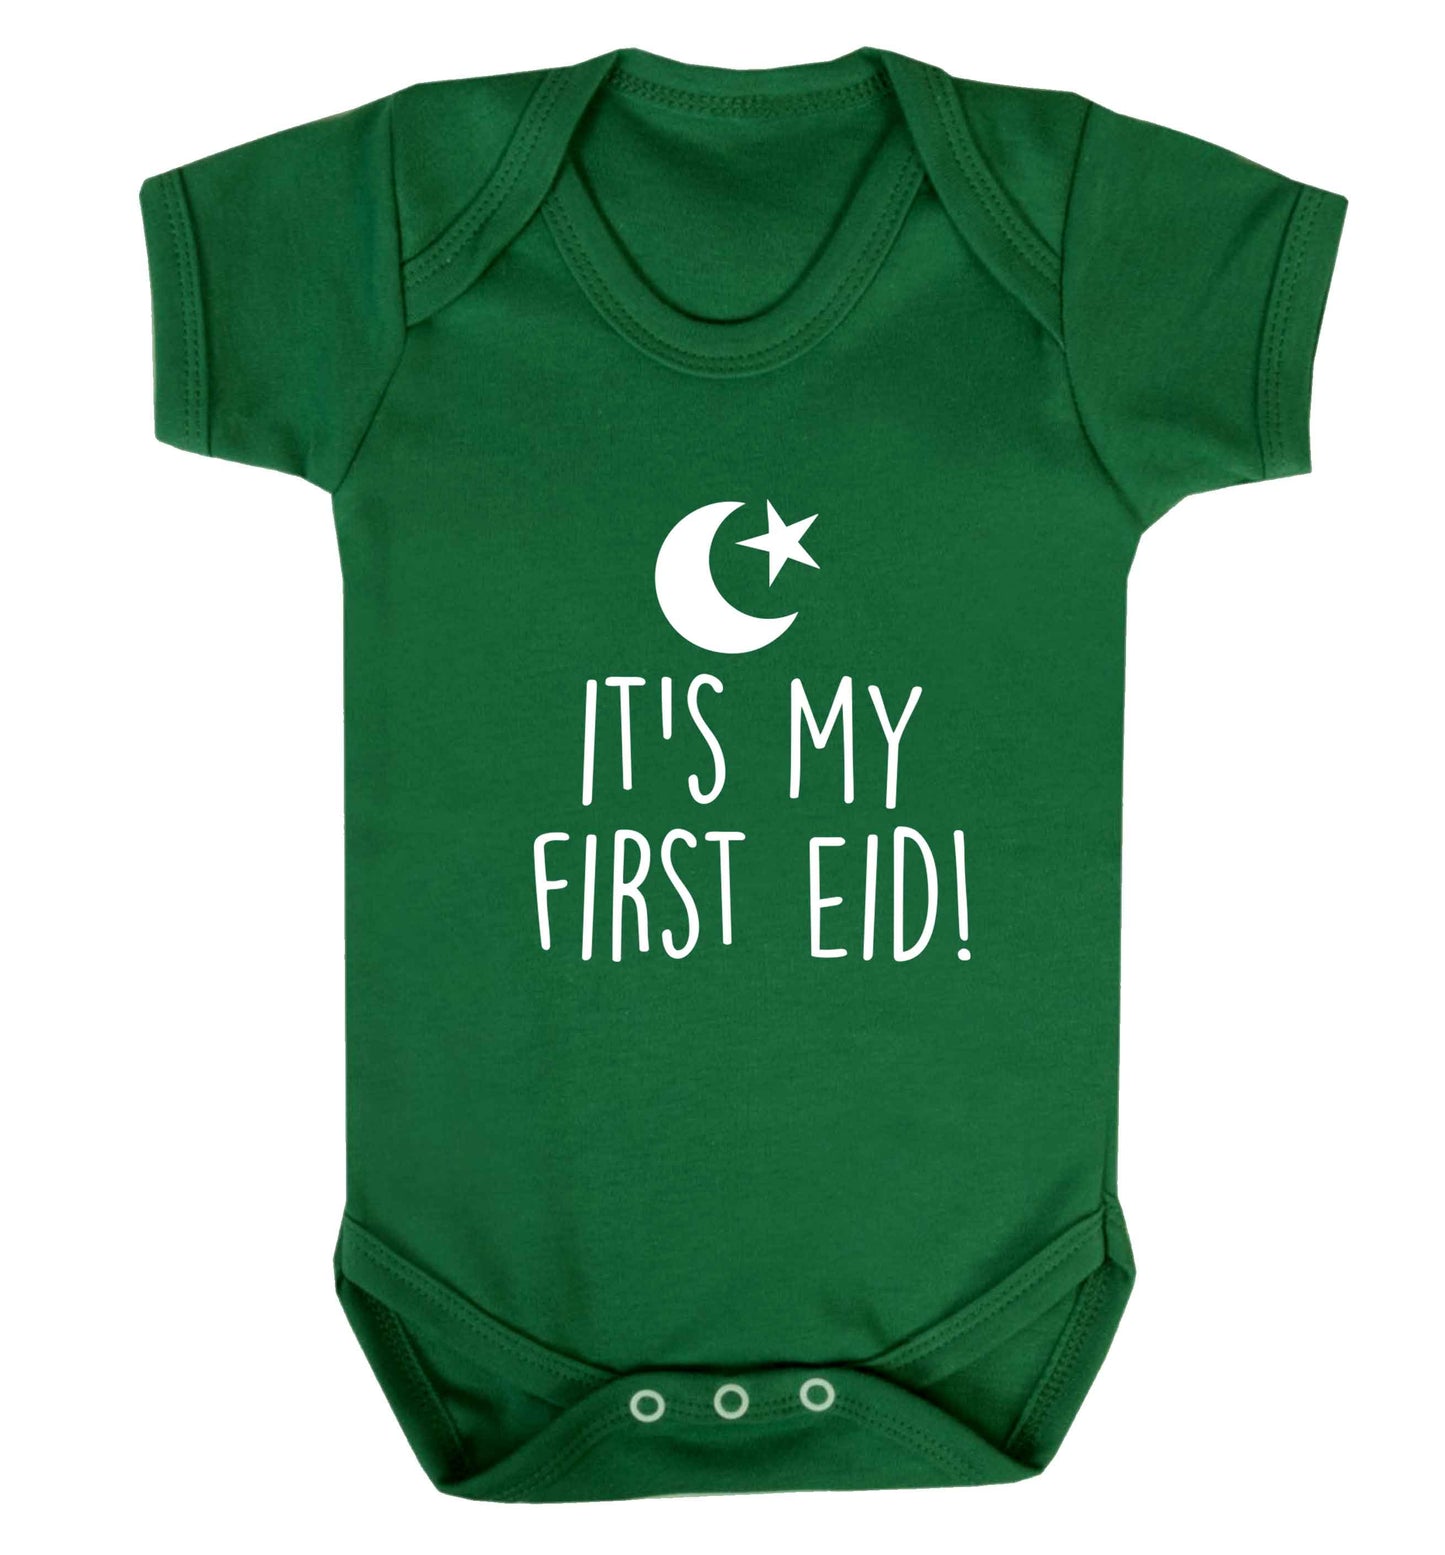 It's my first Eid baby vest green 18-24 months